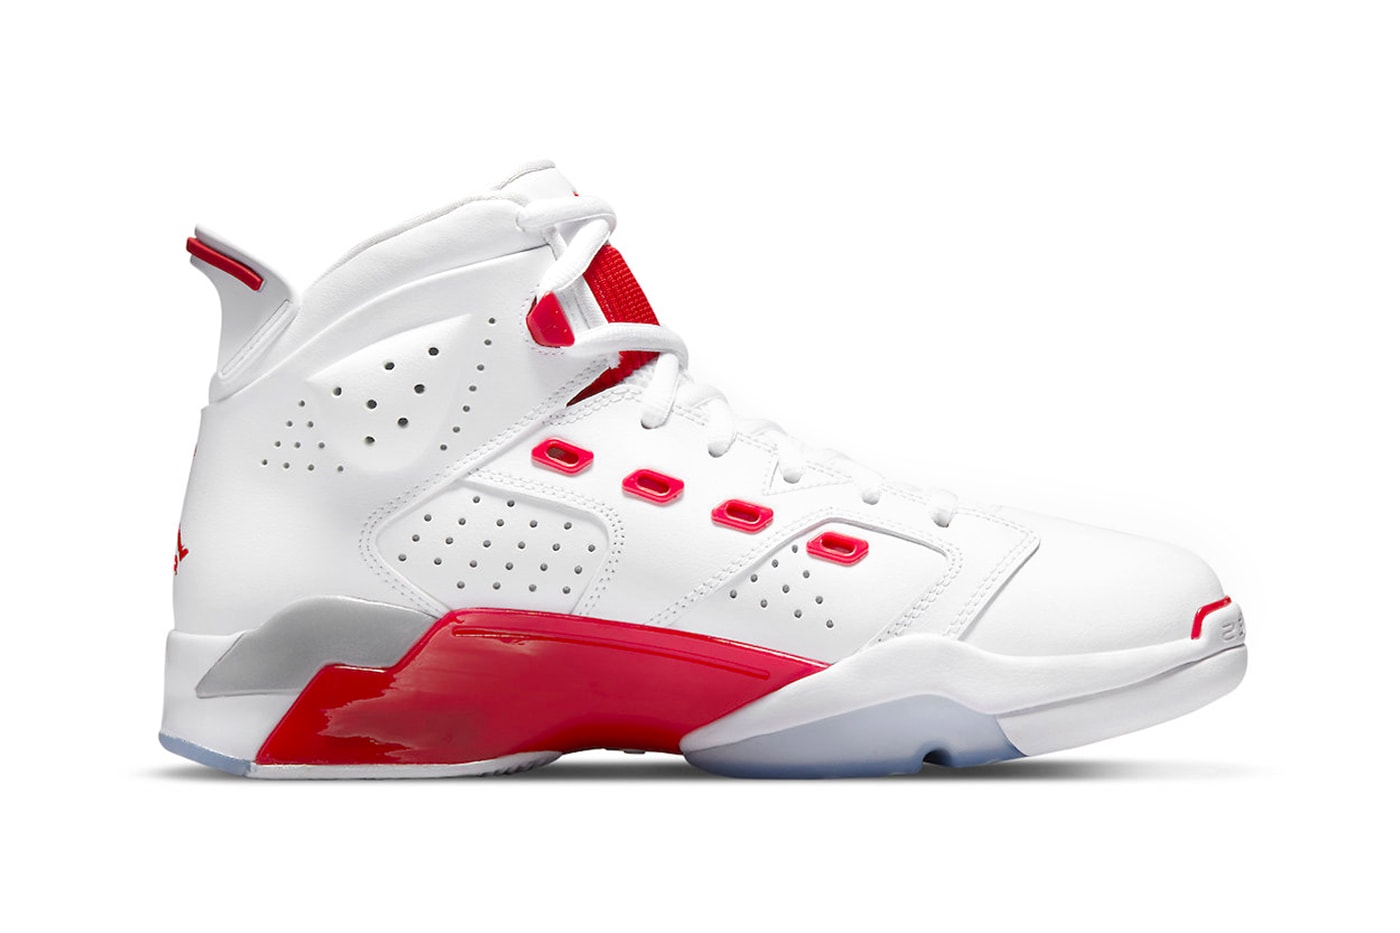 Air Jordan 6-17-23 in "White/Red" Release Date footwear sneaker Jordan Brand leather mesh white red grey icy blue